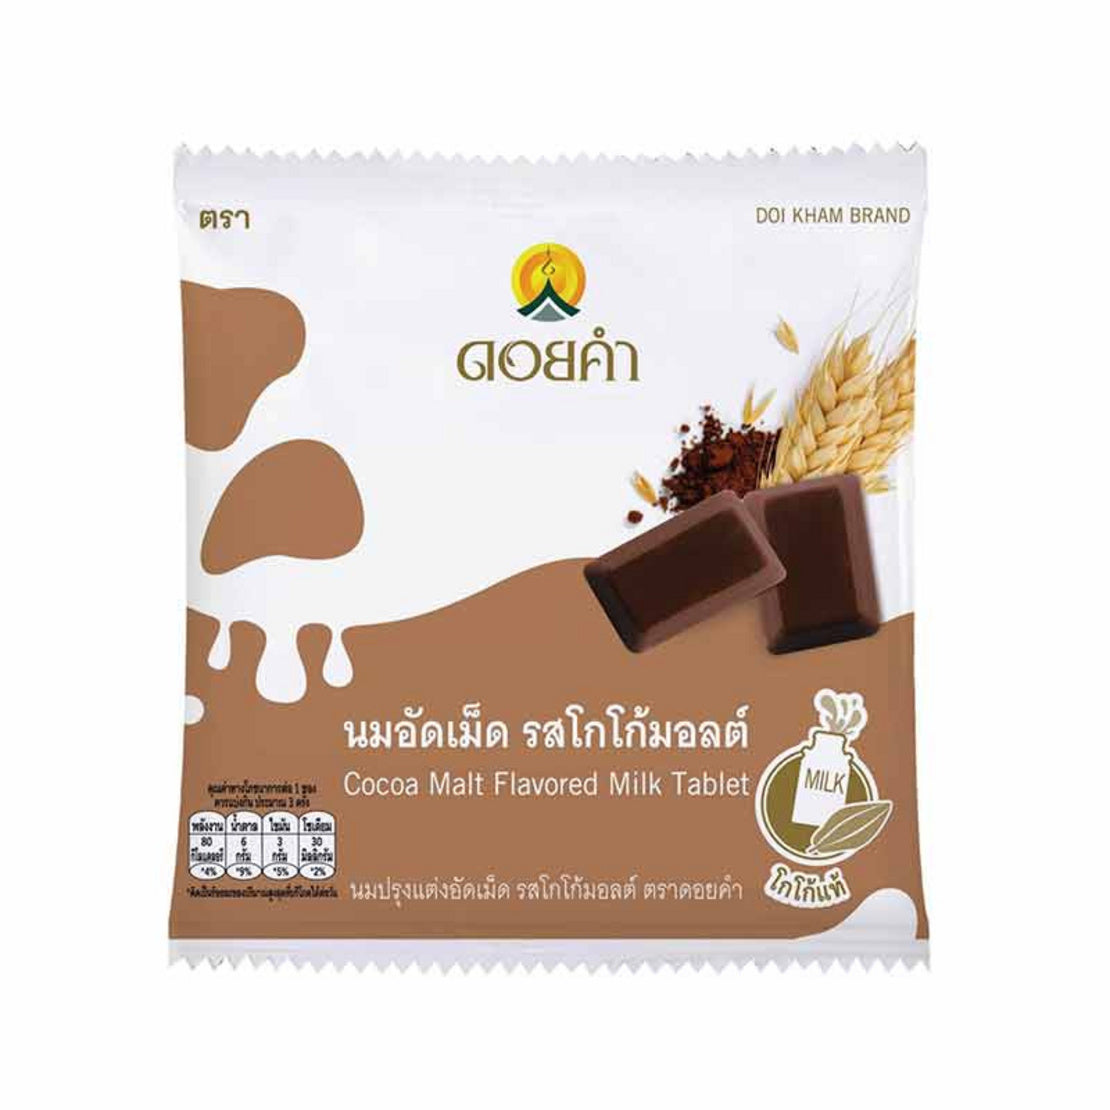 泰國皇家DOI KHAM牛奶片20g